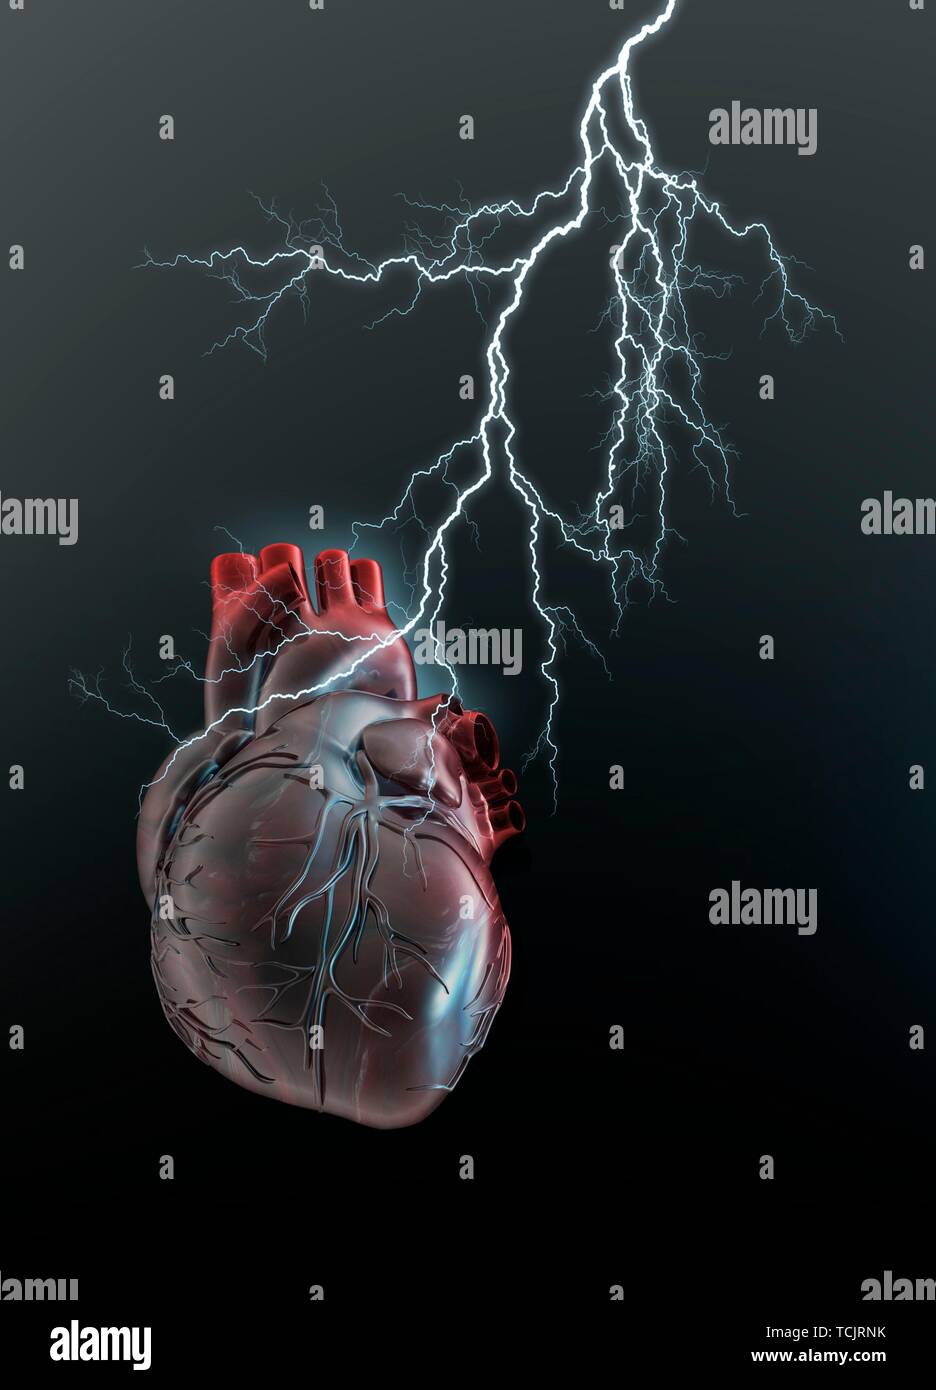 Human heart with lightening, illustration Stock Photo